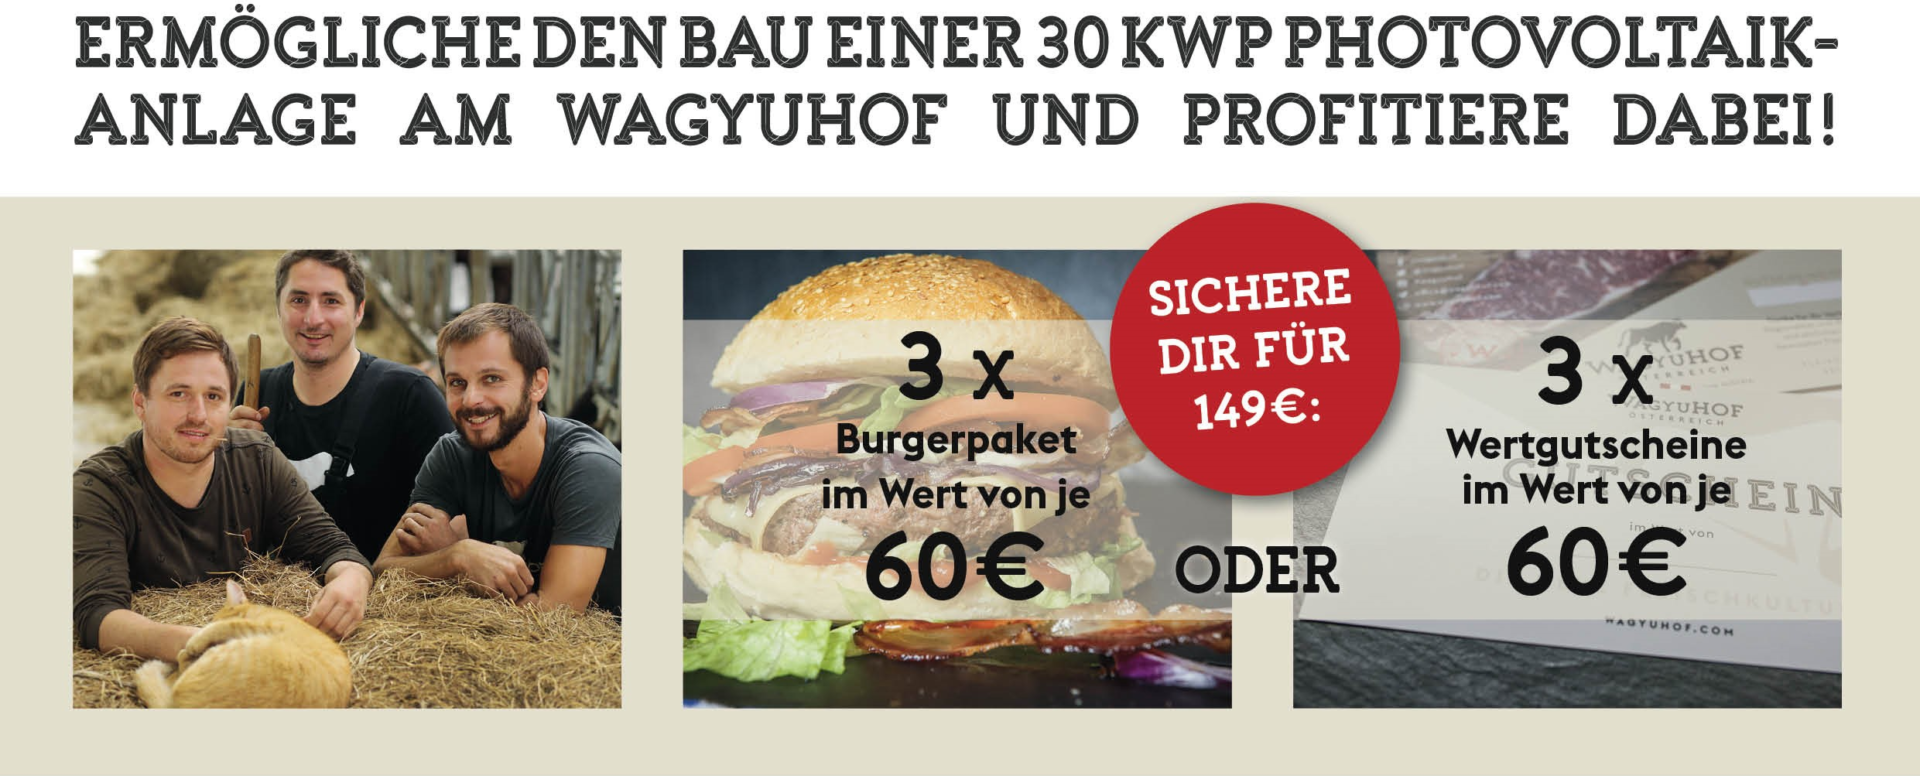 Für 149 € erhältst du Fleisch vom Wagyu-Rind im Wert von 180 €